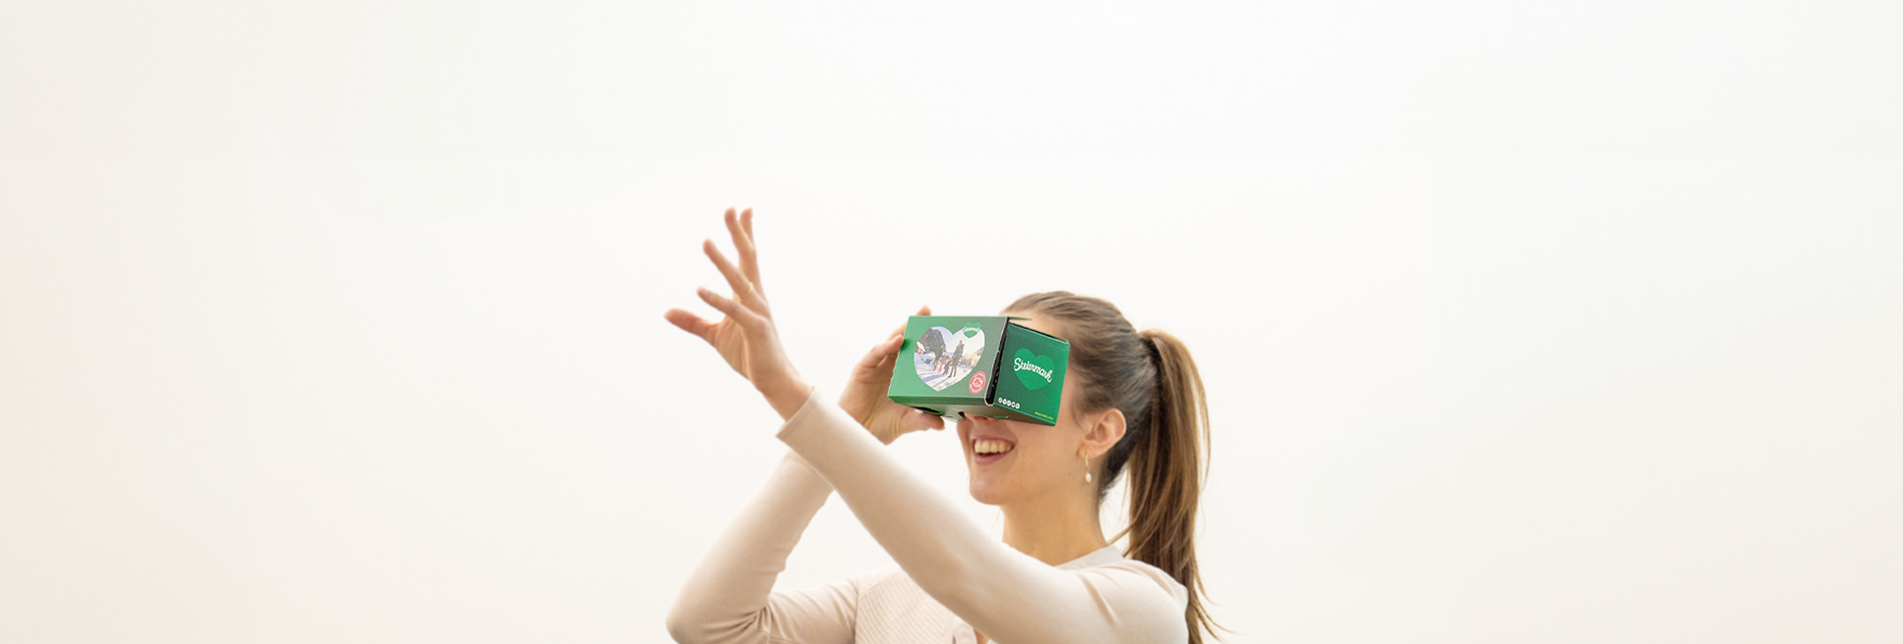 Mit VR-Brille in den 360°-Adventkalender schauen.  | © STG | Jesse Streibl 